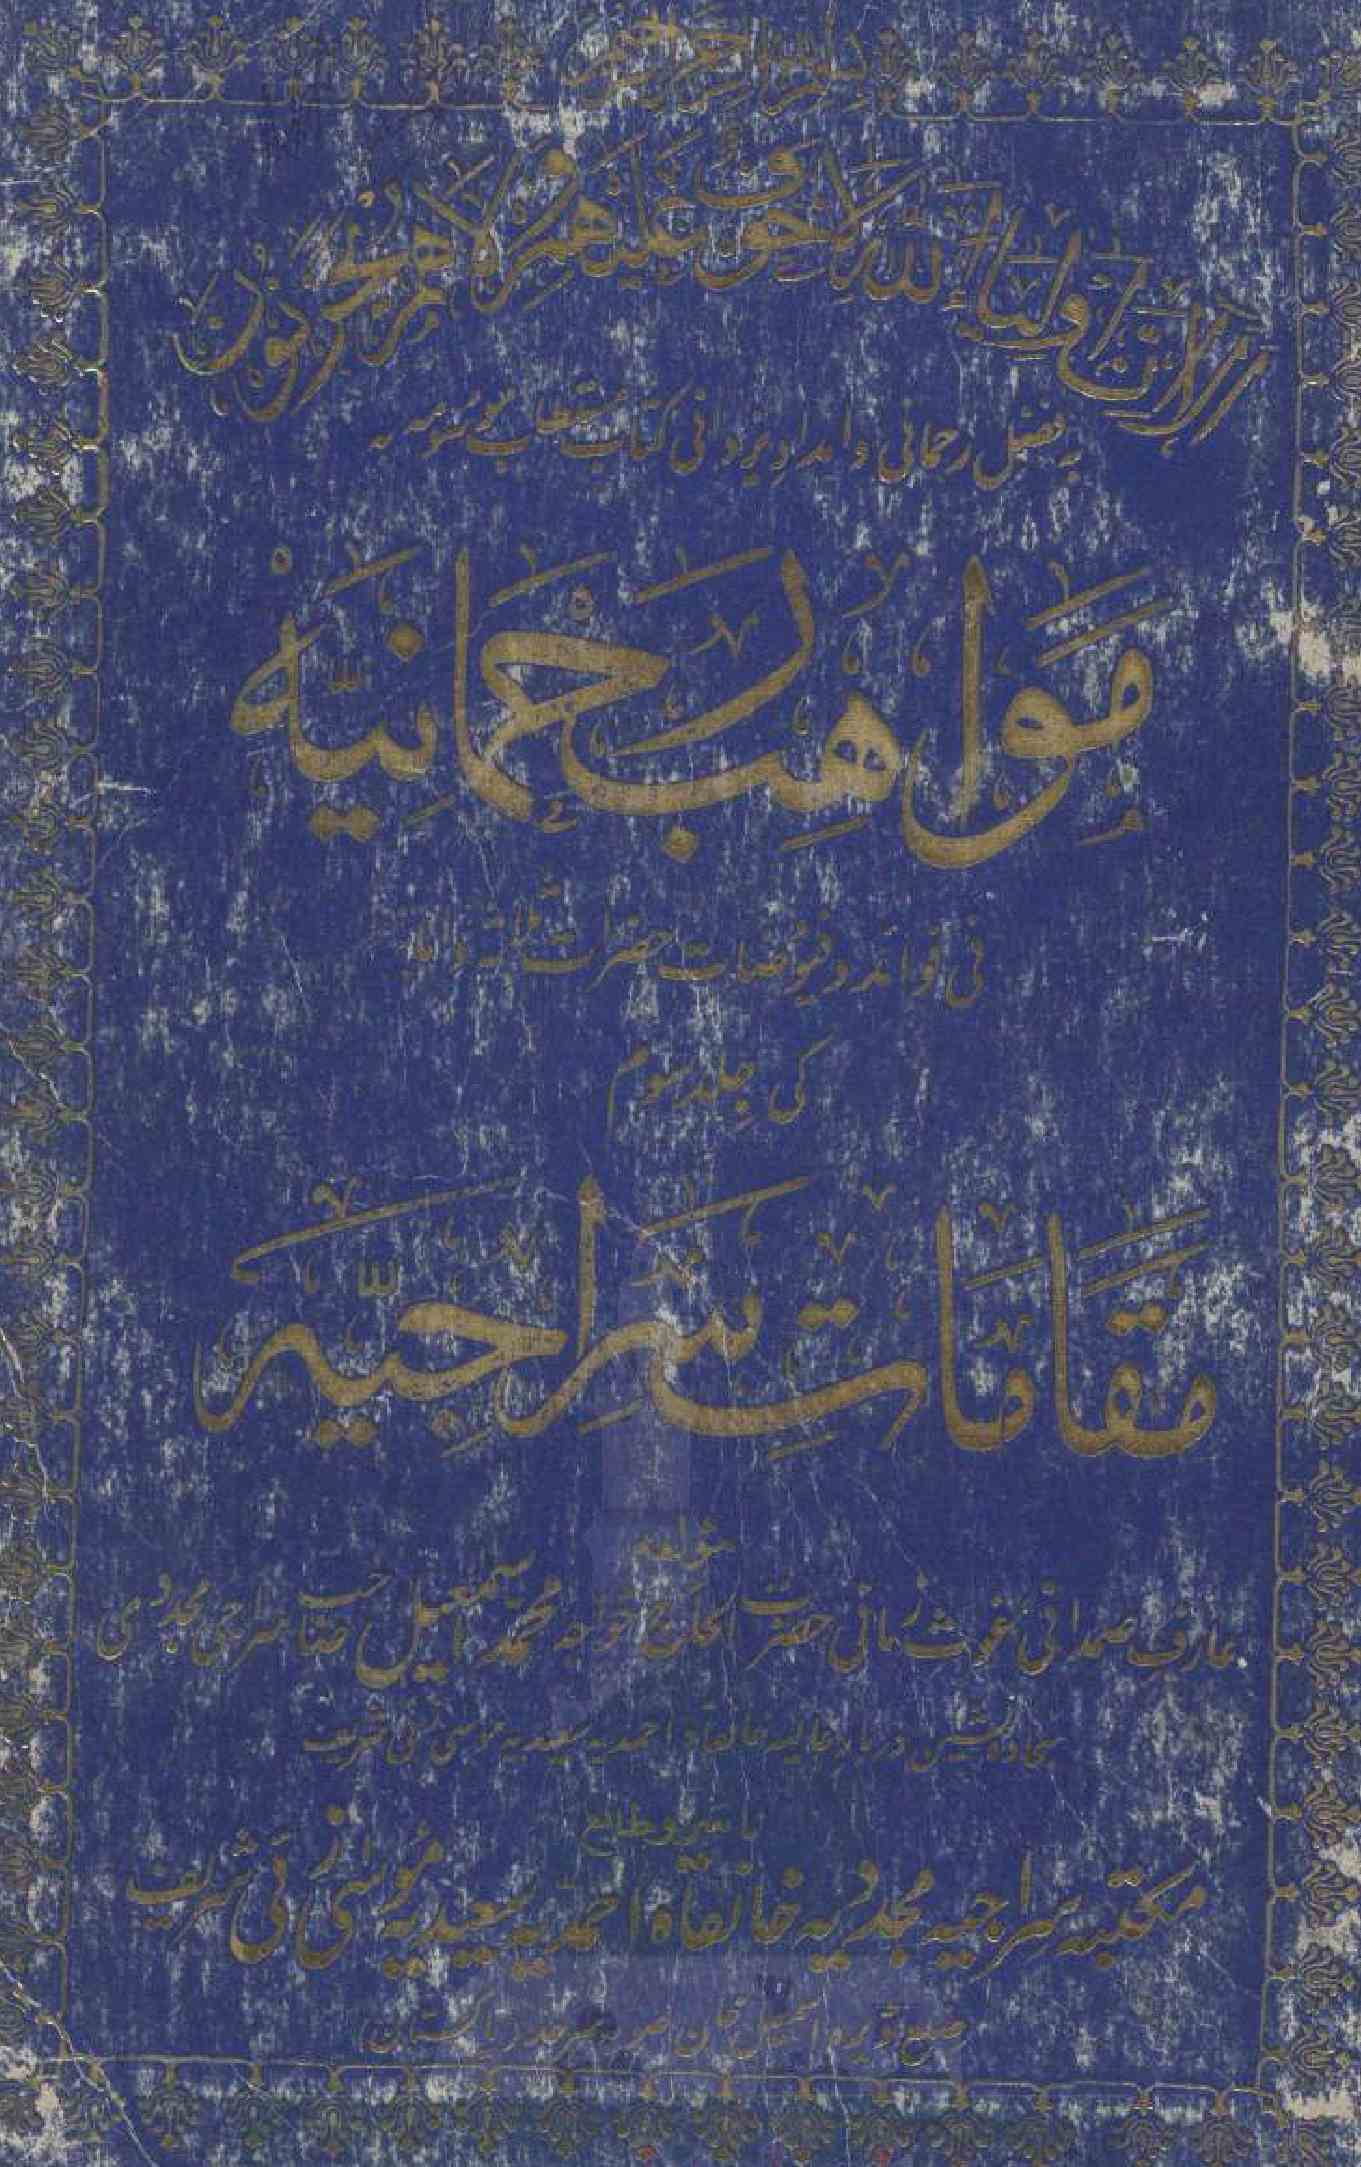 Mawahib-e-Rahmania